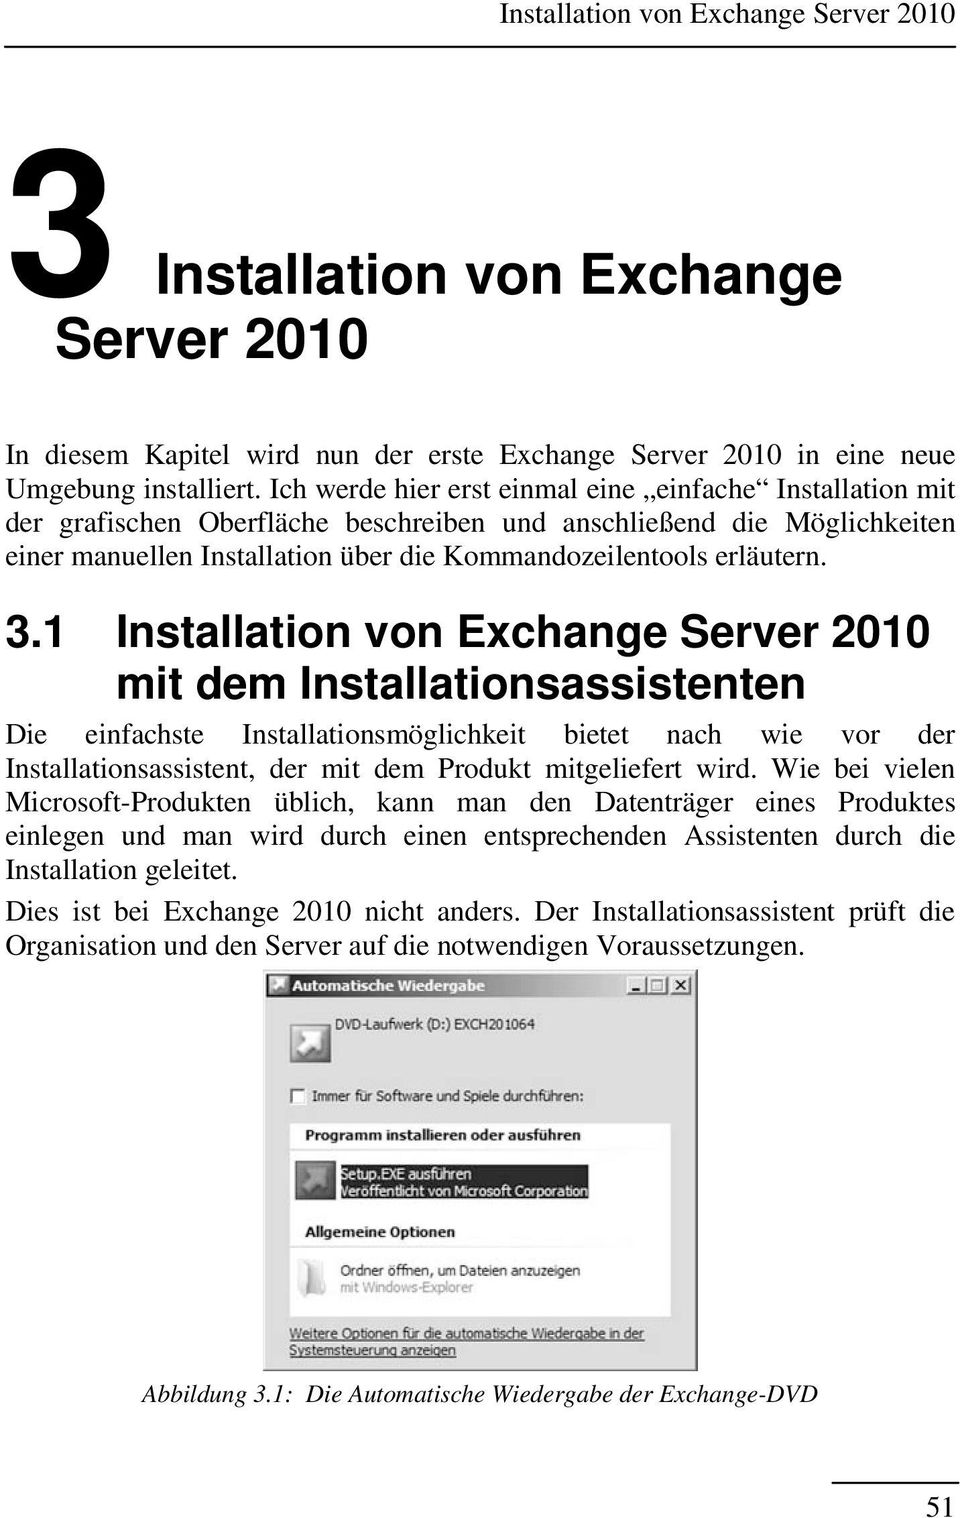 3.1 Installation von Exchange Server 2010 mit dem Installationsassistenten Die einfachste Installationsmöglichkeit bietet nach wie vor der Installationsassistent, der mit dem Produkt mitgeliefert